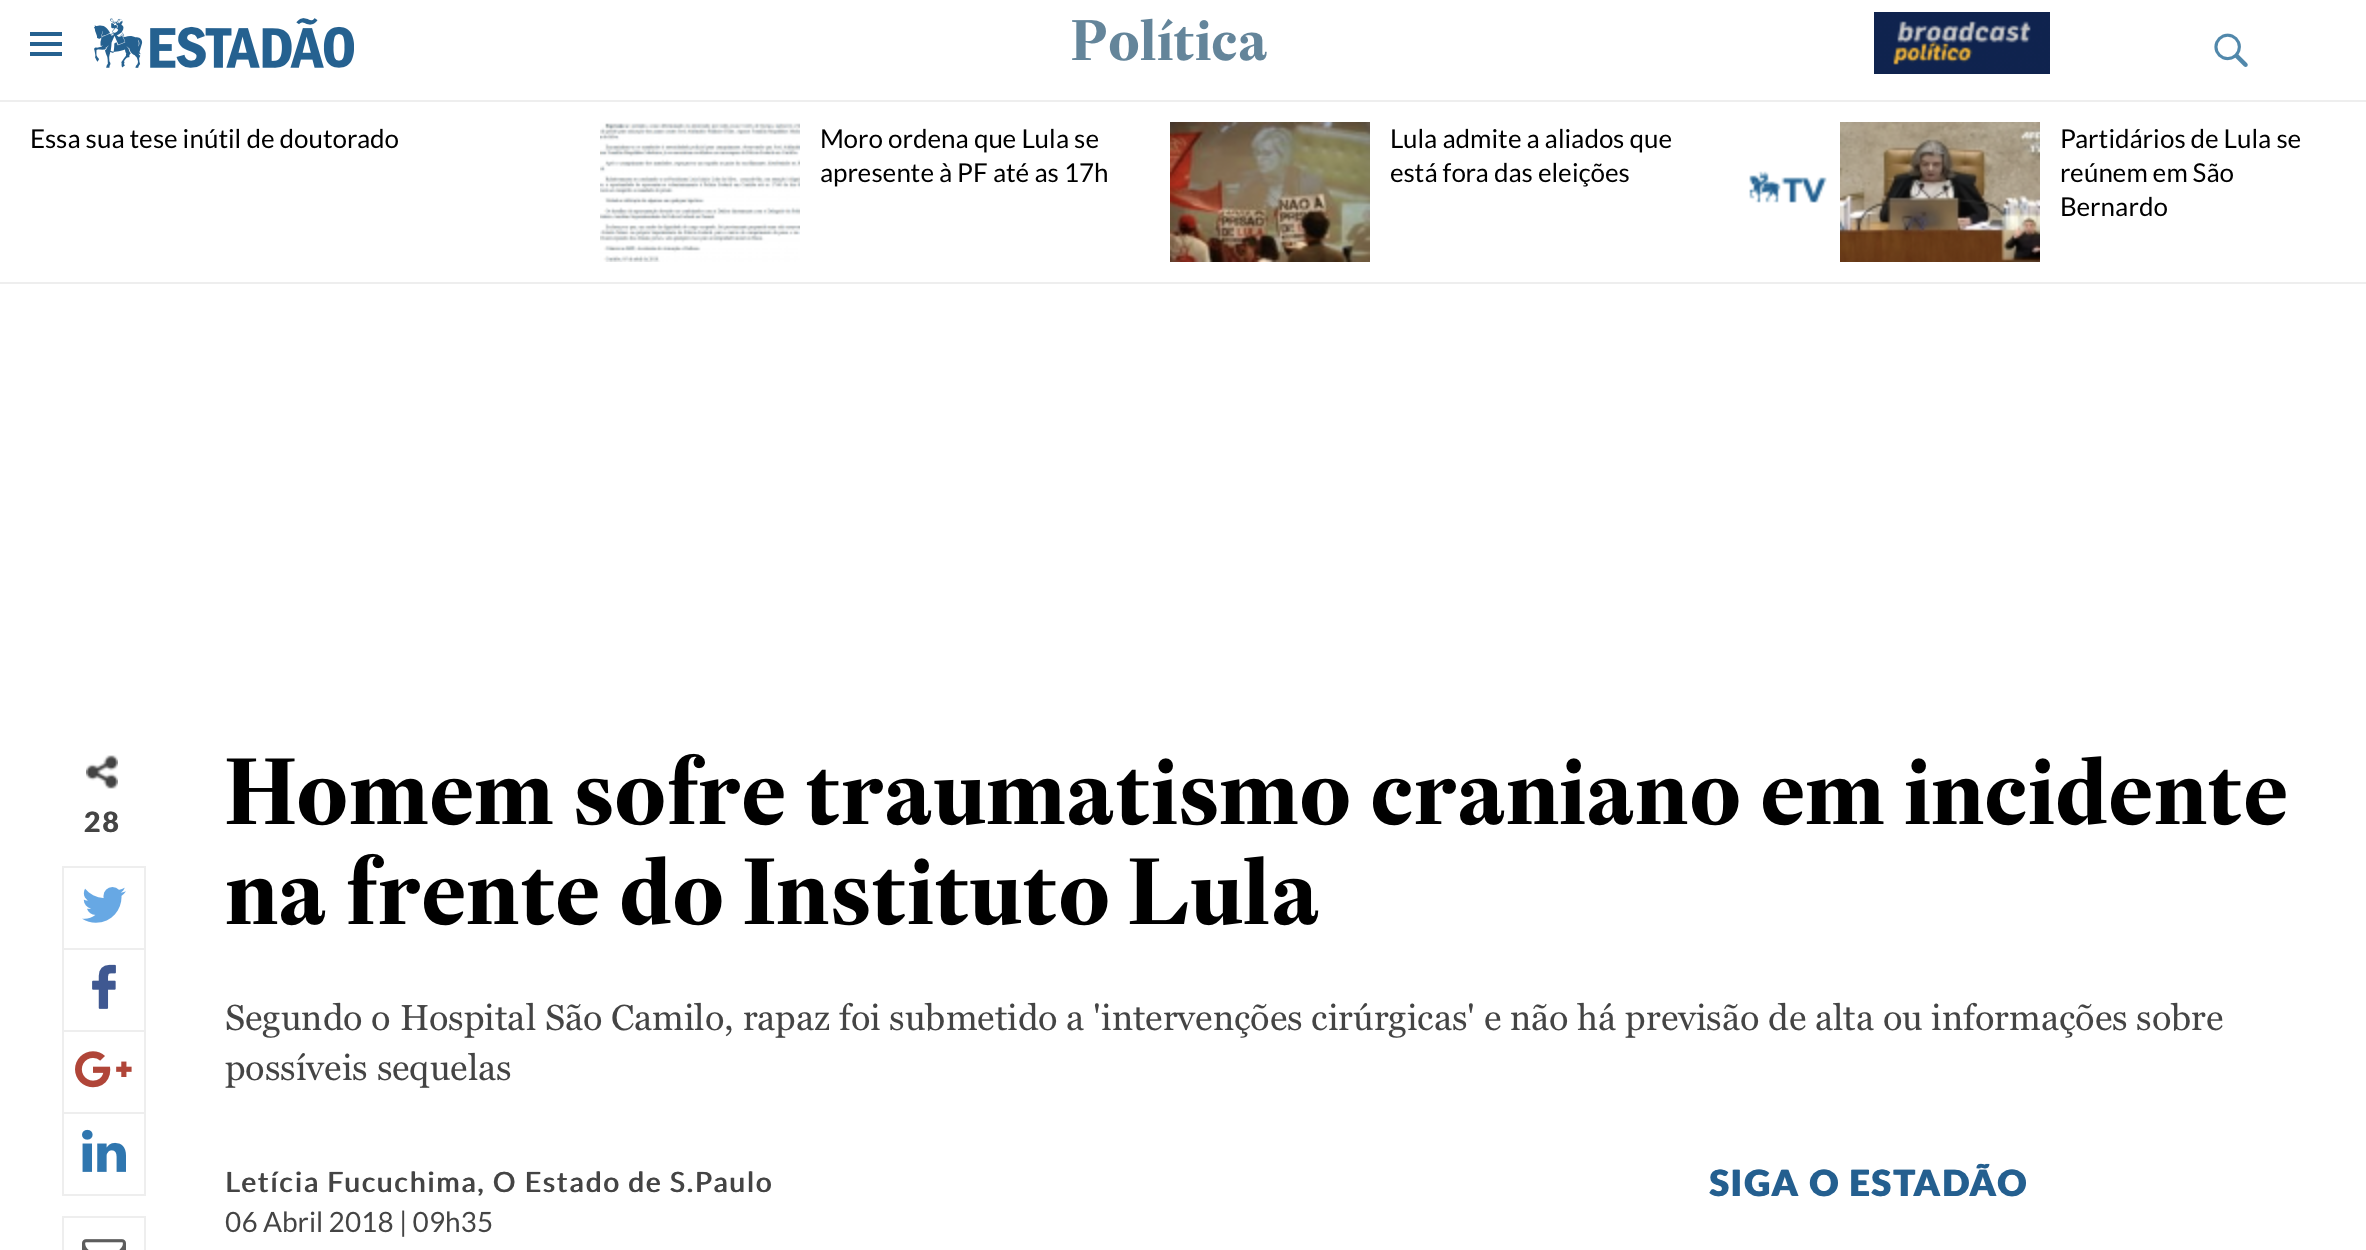 Estadão descreve tentativa de assassinato em frente ao Instituto Lula como "incidente"